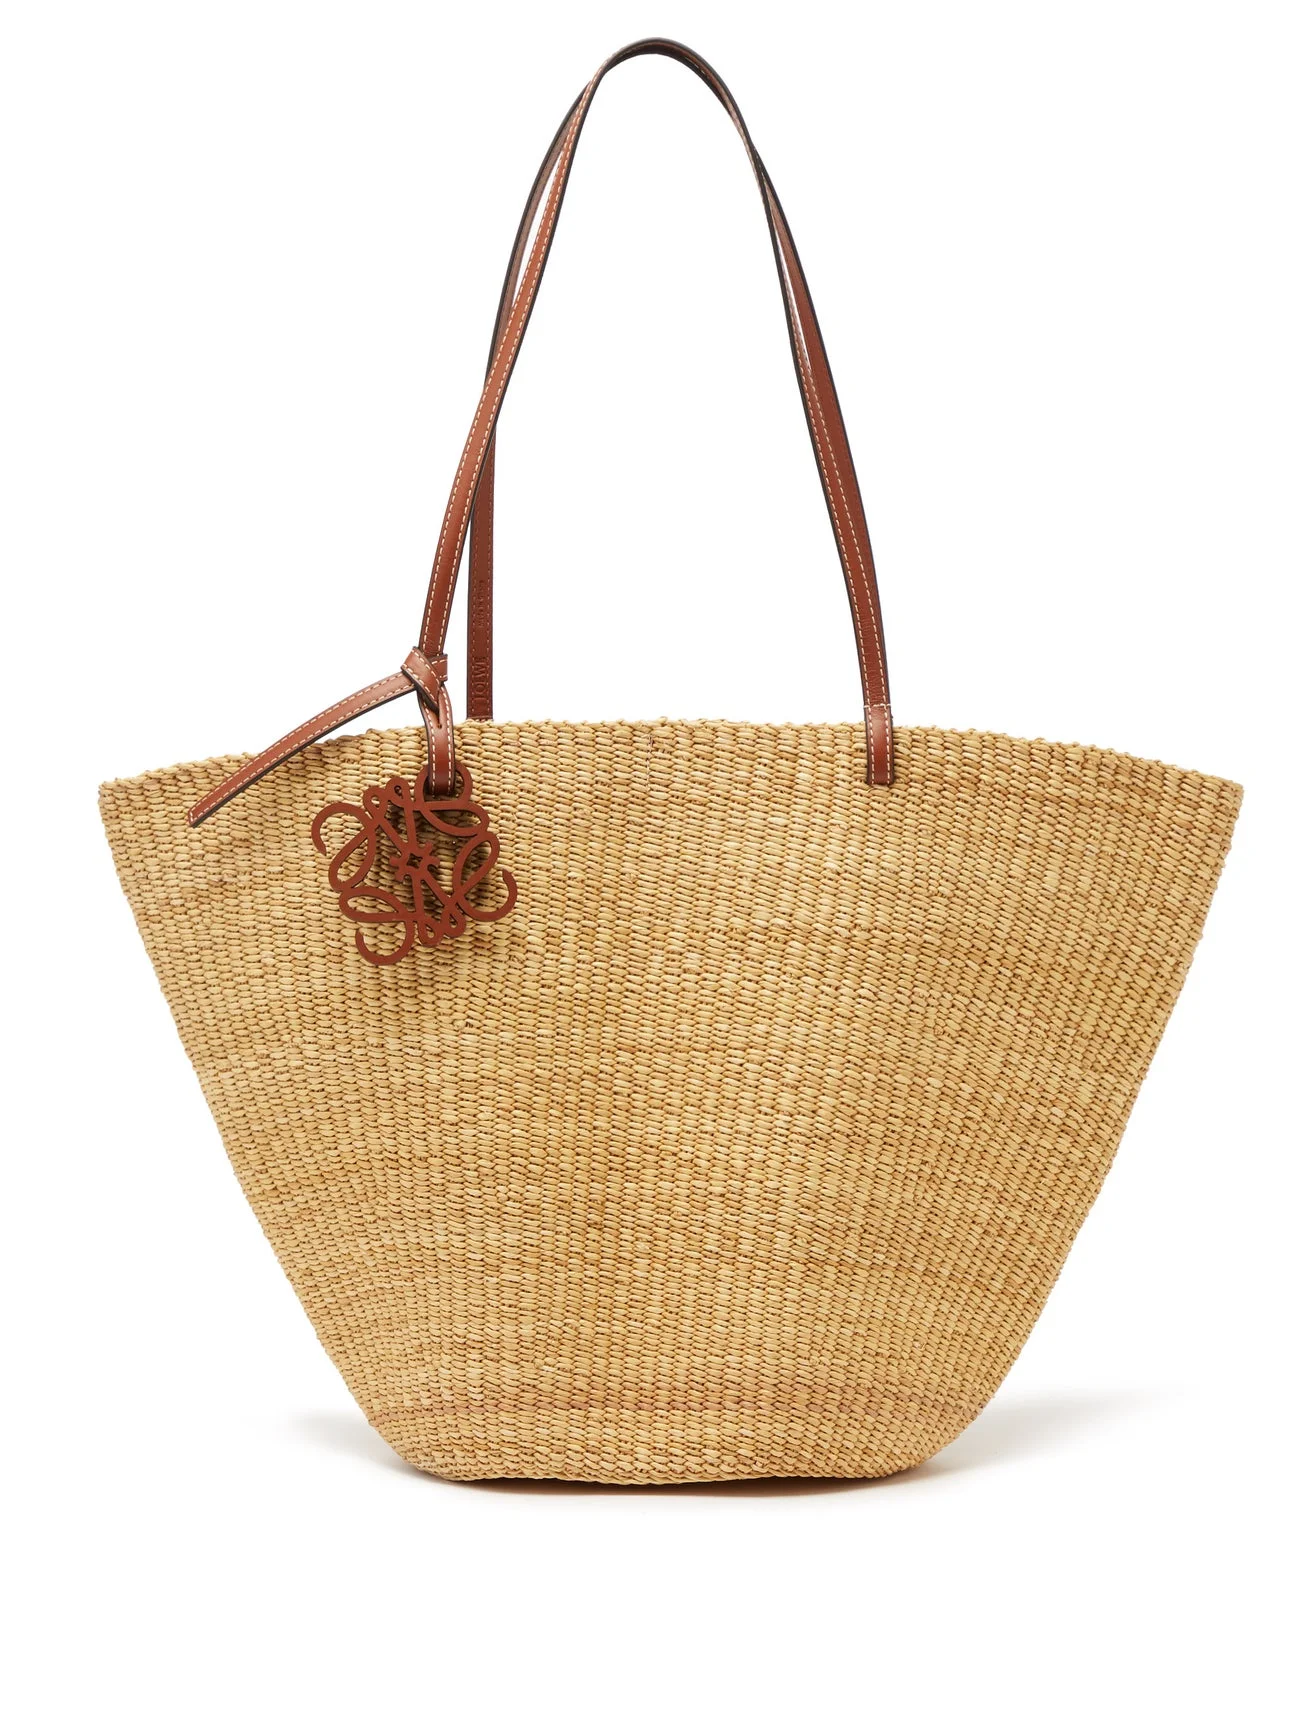 Beige Anagram leather-trimmed raffia basket bag, LOEWE